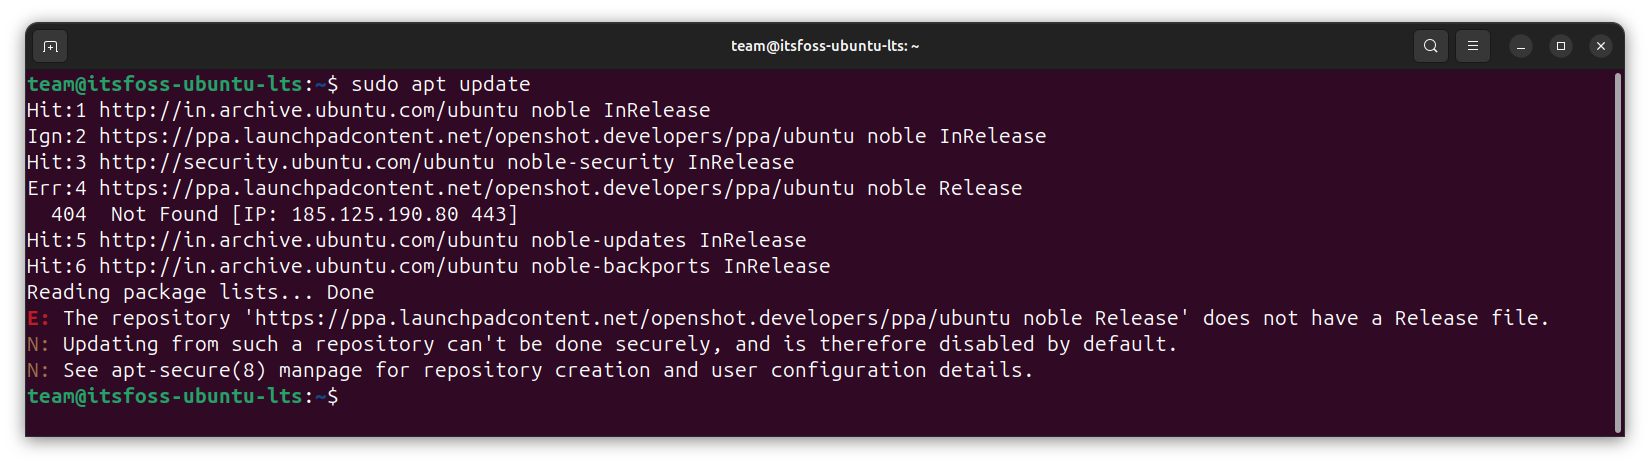 Пошаговое руководство по обновлению Ubuntu LTS до следующей версии (на примере Ubuntu 22.04 > Ubuntu 24.04). Подойдёт оно и для других версий Ubuntu, так что есть смысл сохранить закладку.-19